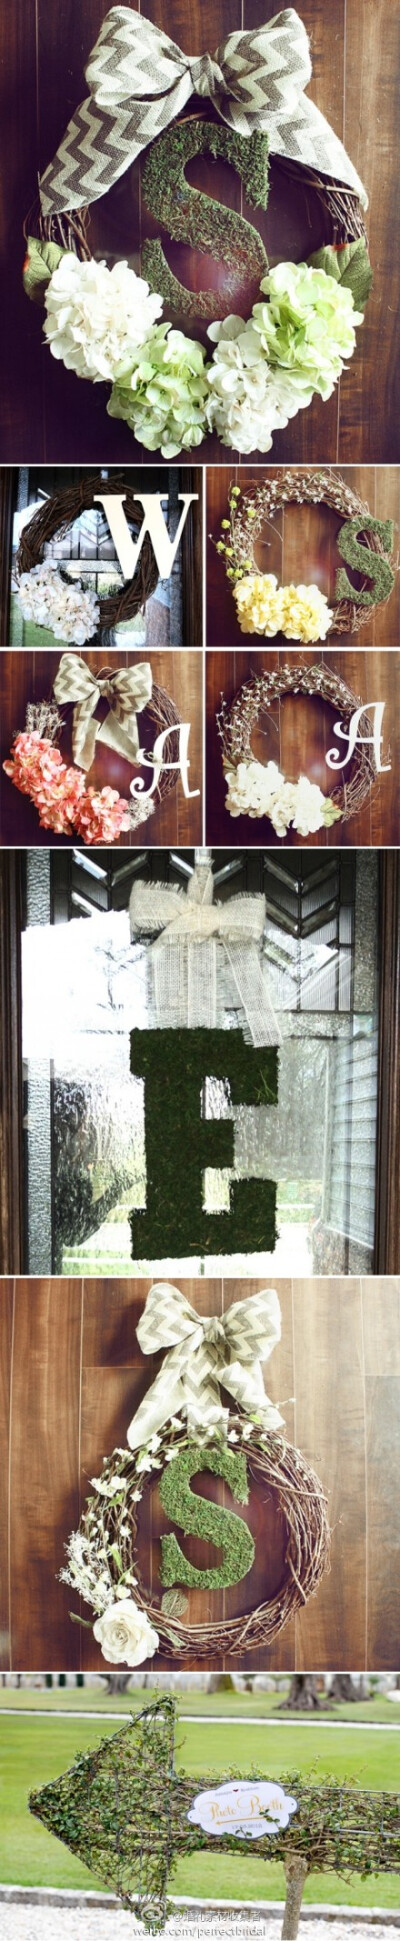 运用植物藤条、苔藓、毛线等，手工DIY制作的有趣婚礼装饰物